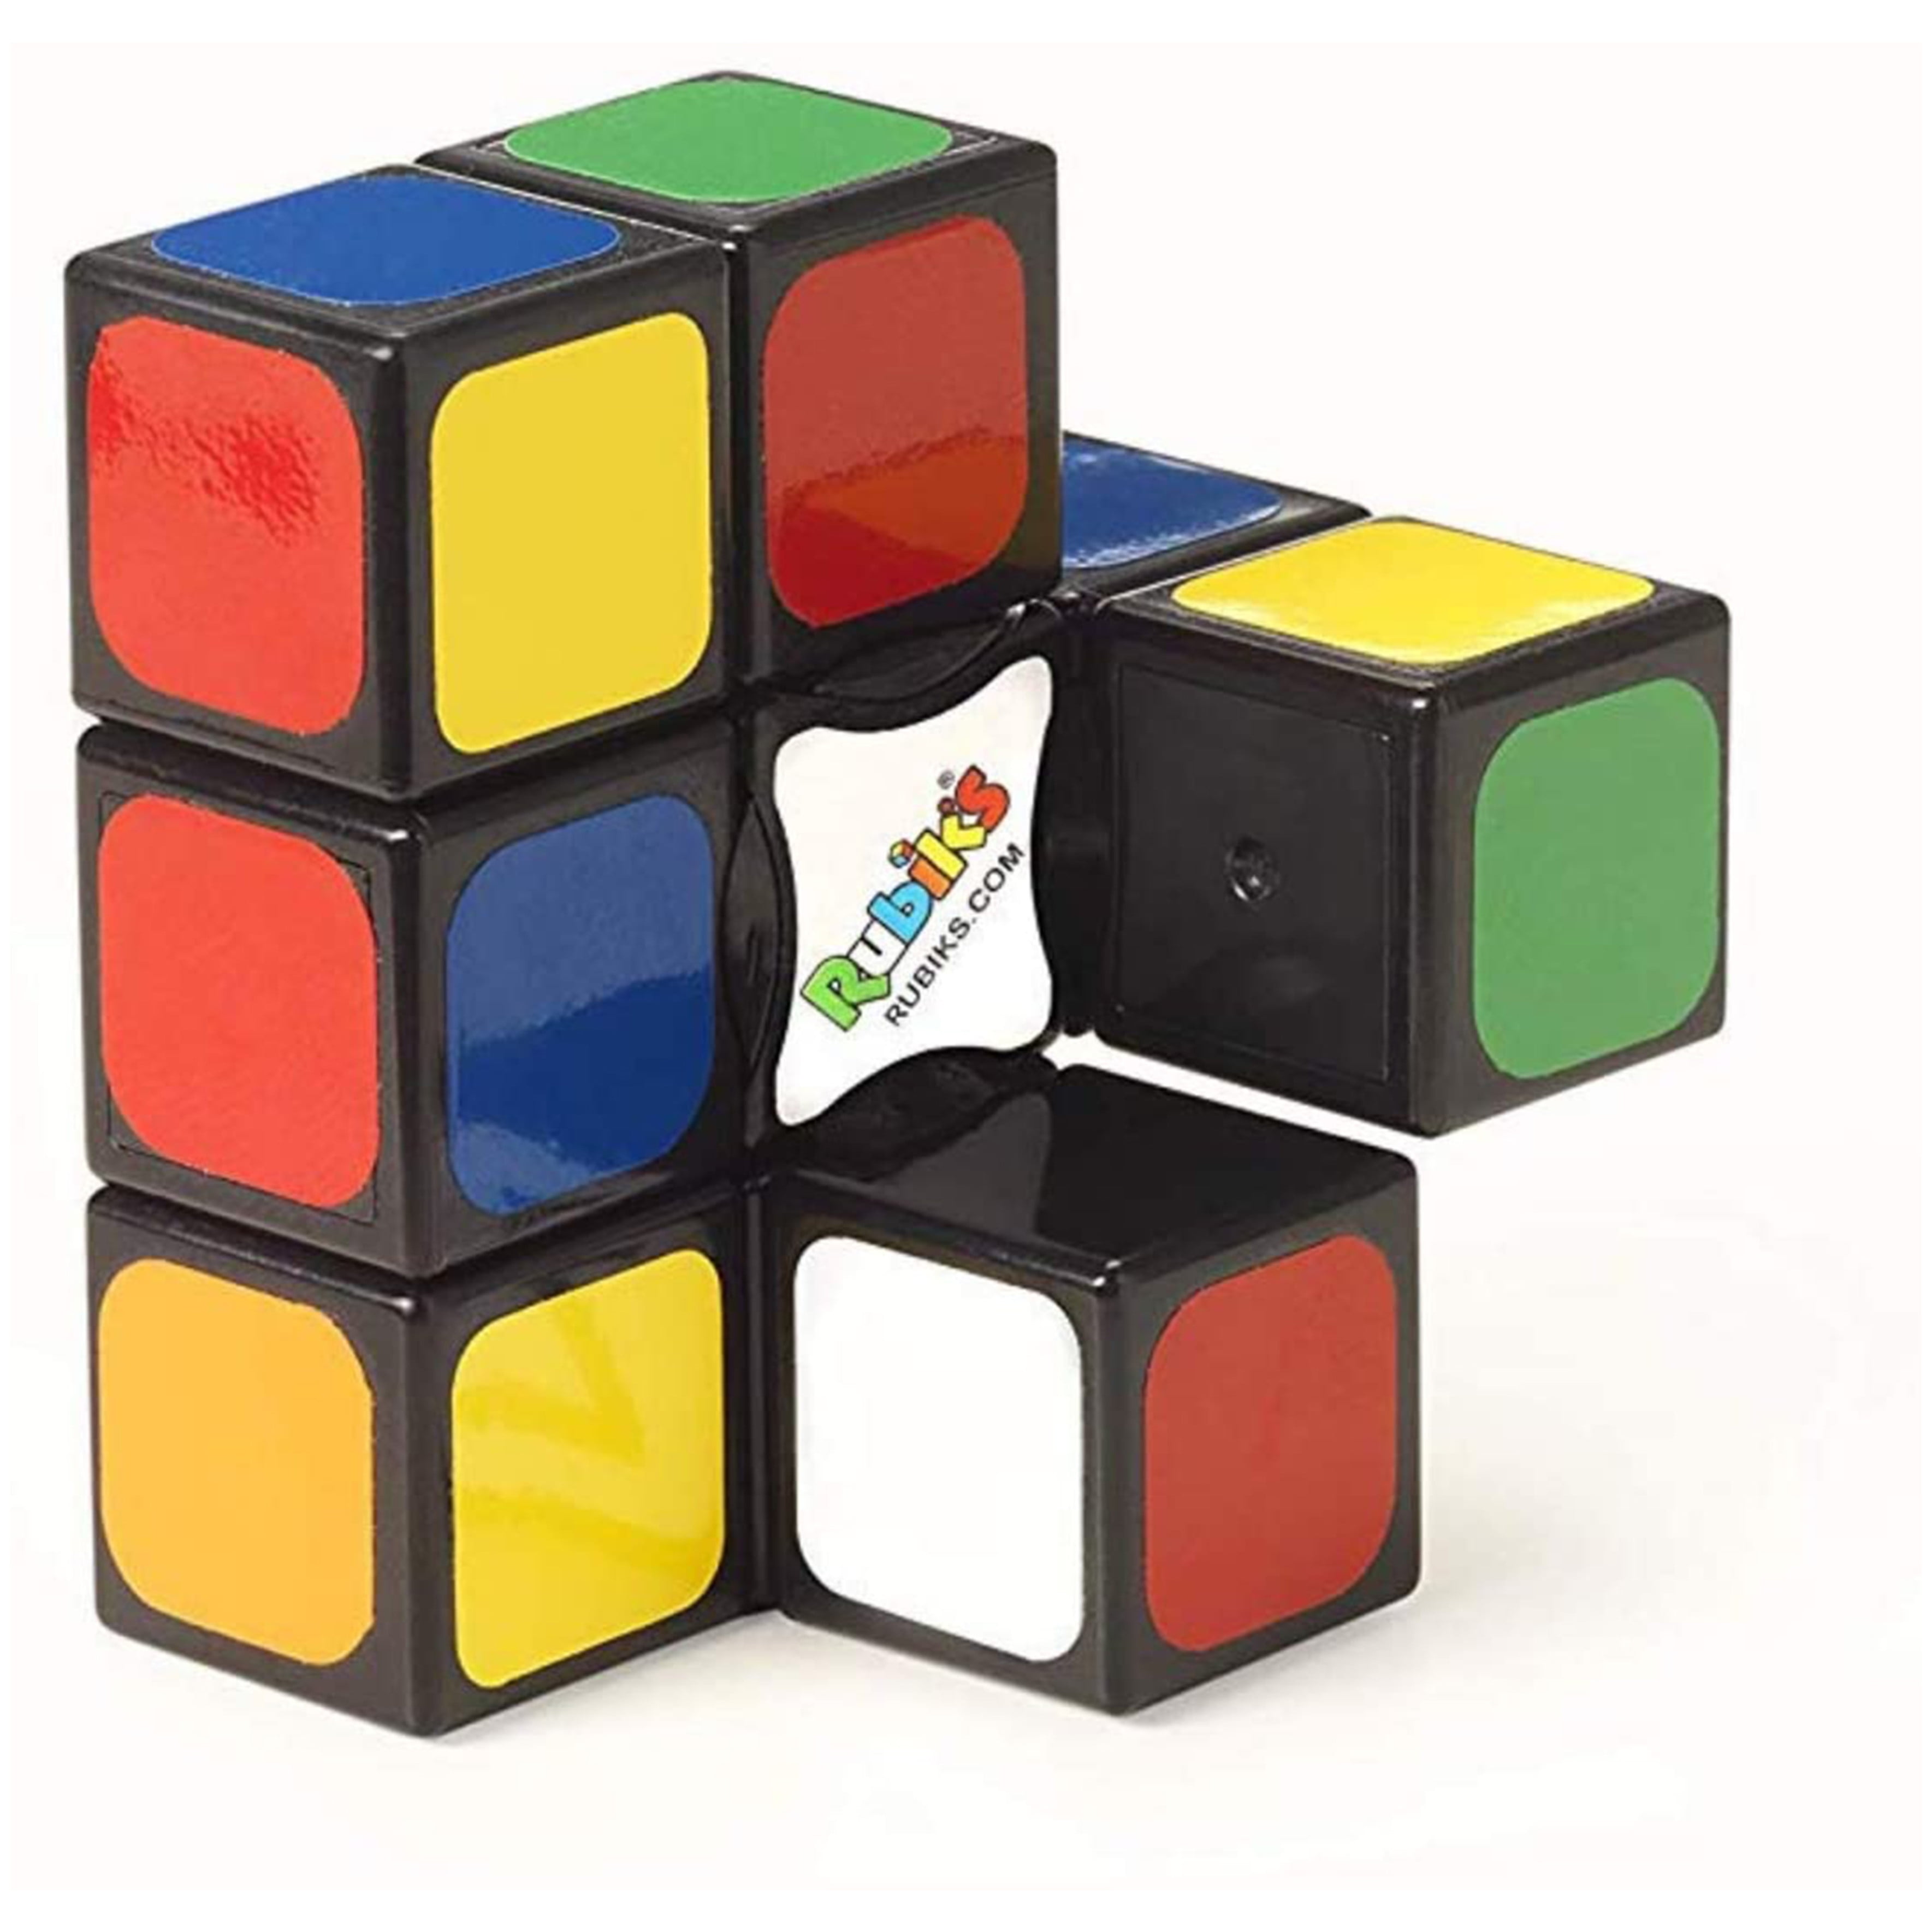 Rubik's Edge, 3x3x1 Rubik's Cube for Beginners, Adults & Kids Ages